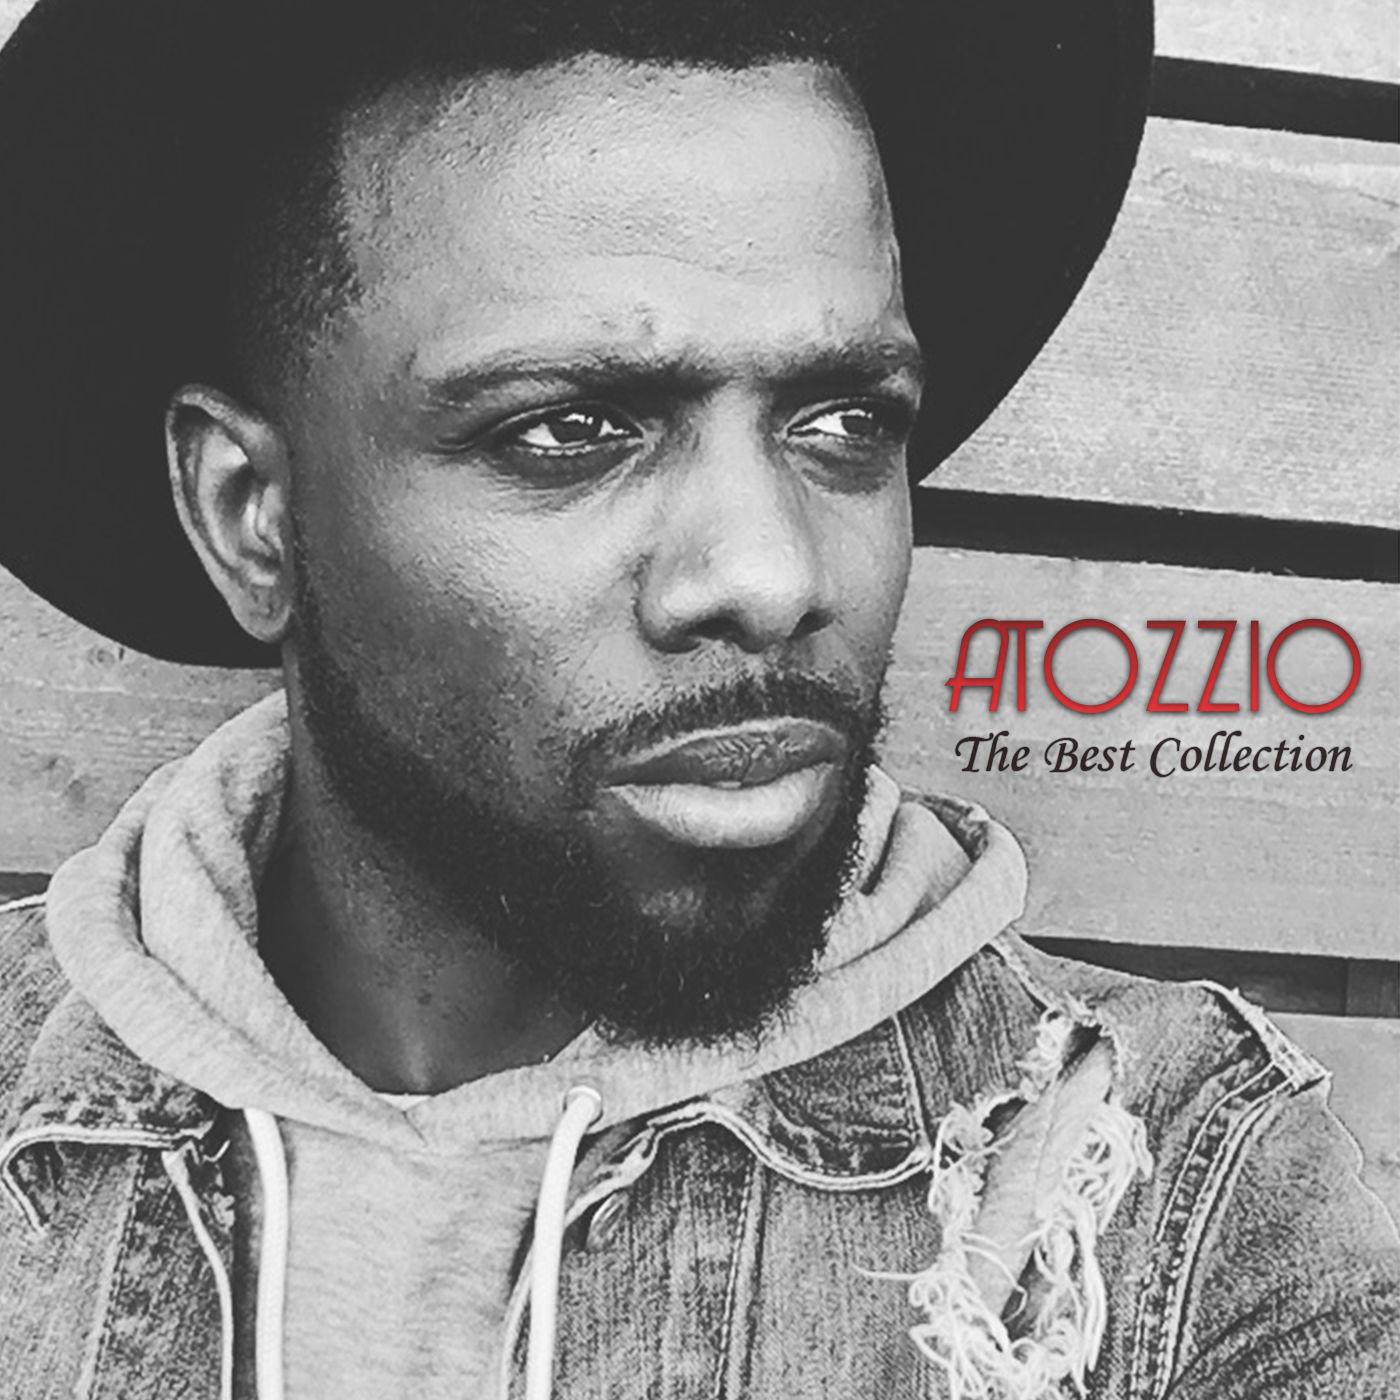 Atozzio - Without You